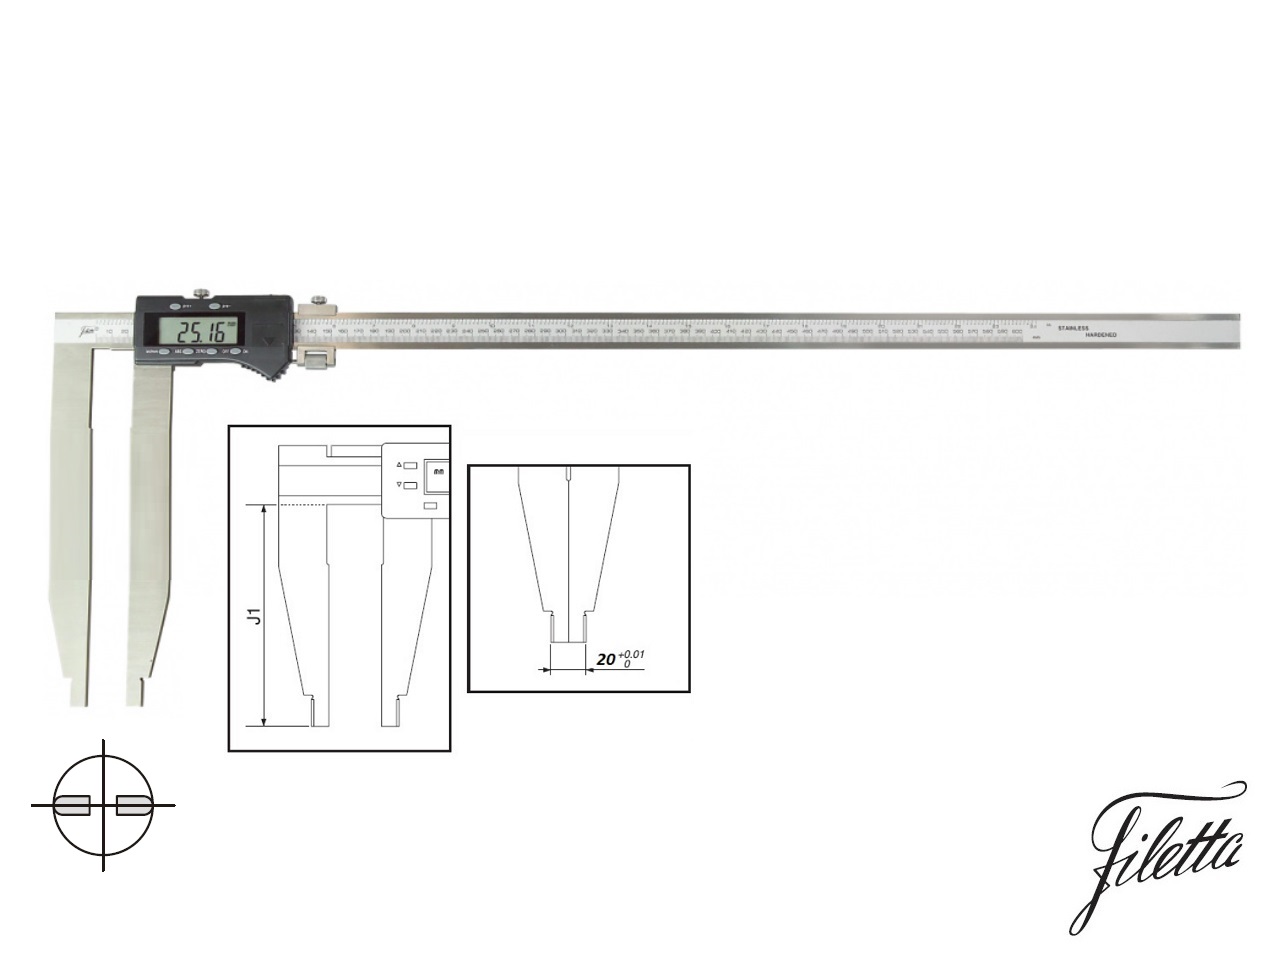 Digitální posuvné měřítko Filetta 0-300 mm bez nožíků, s měřicími čelistmi 150 mm 